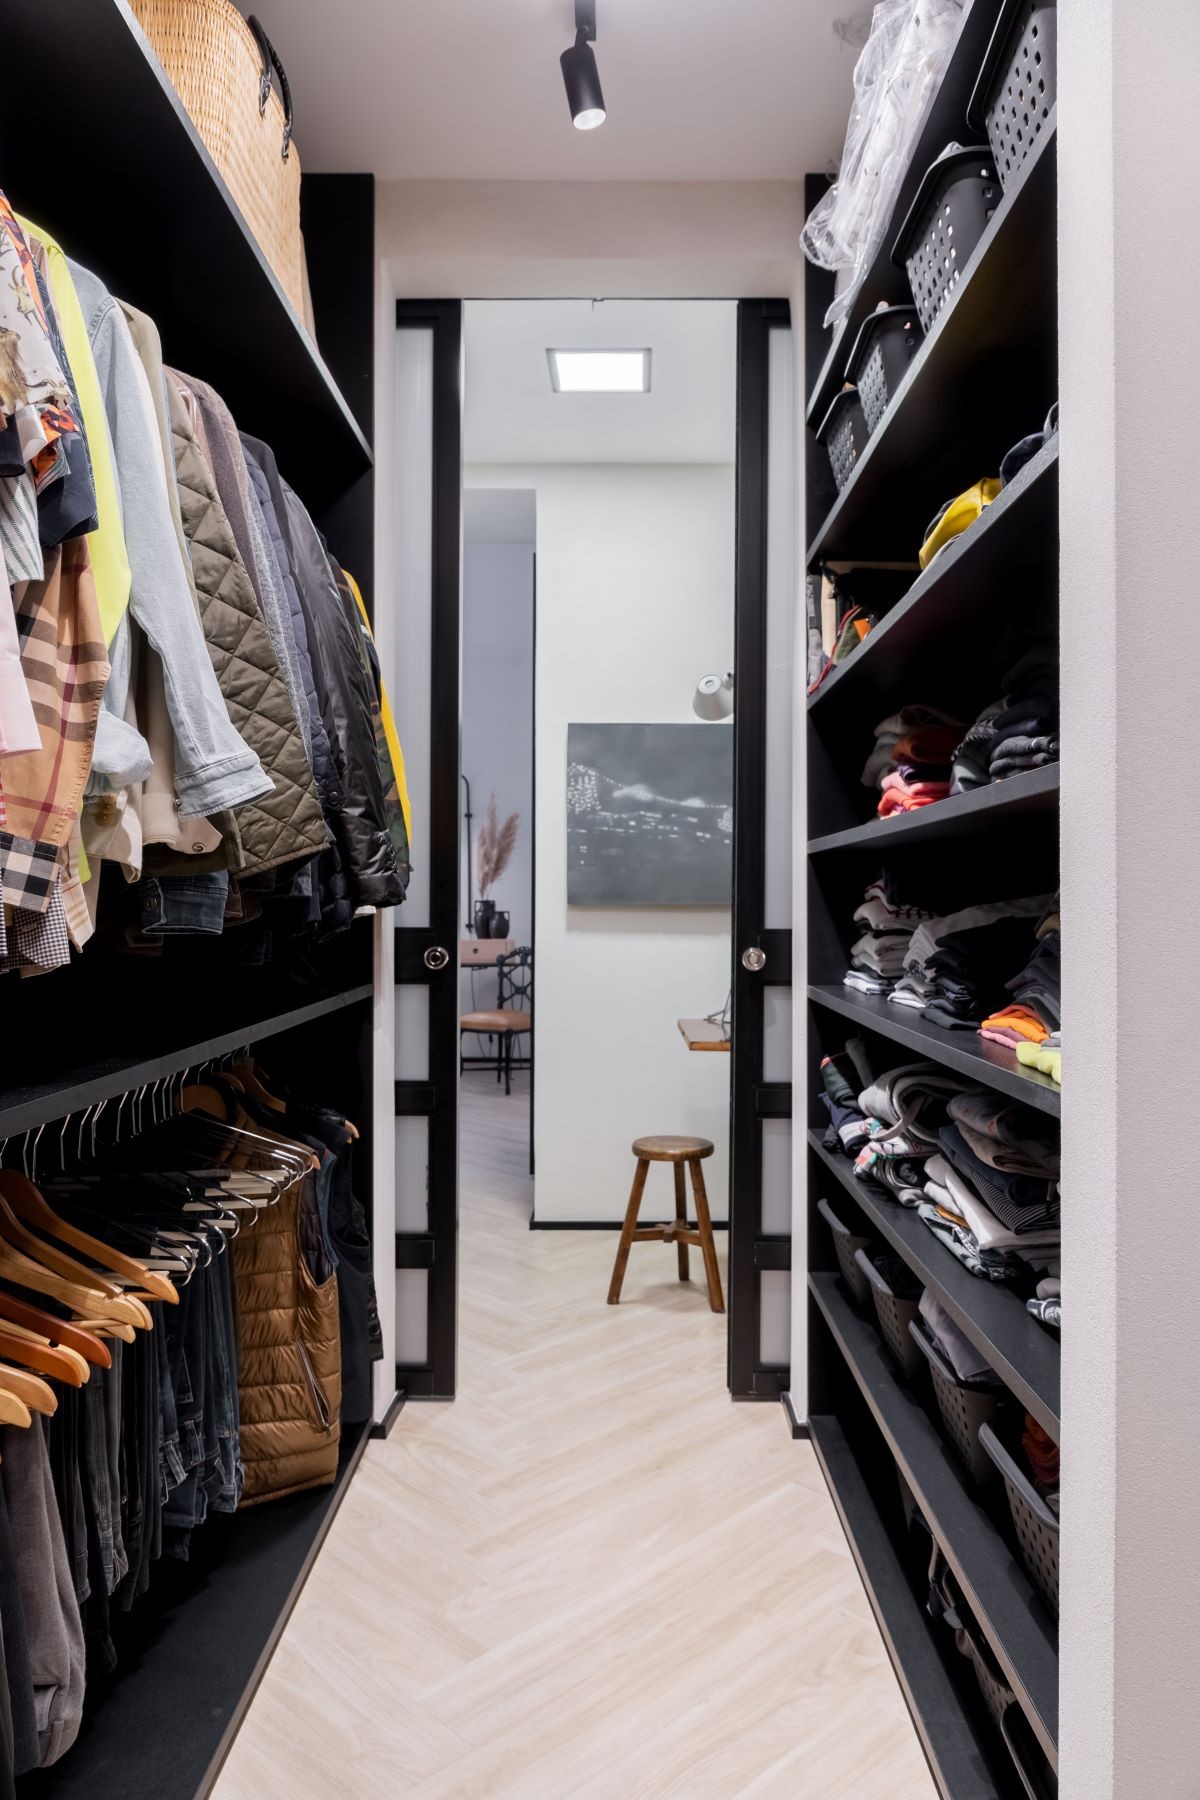 CLOSET | Para organizar melhor as roupas do morador um closet espaçoso foi criado para setorizar e arrumar  (Foto: Rafael Renzo / Divulgação)